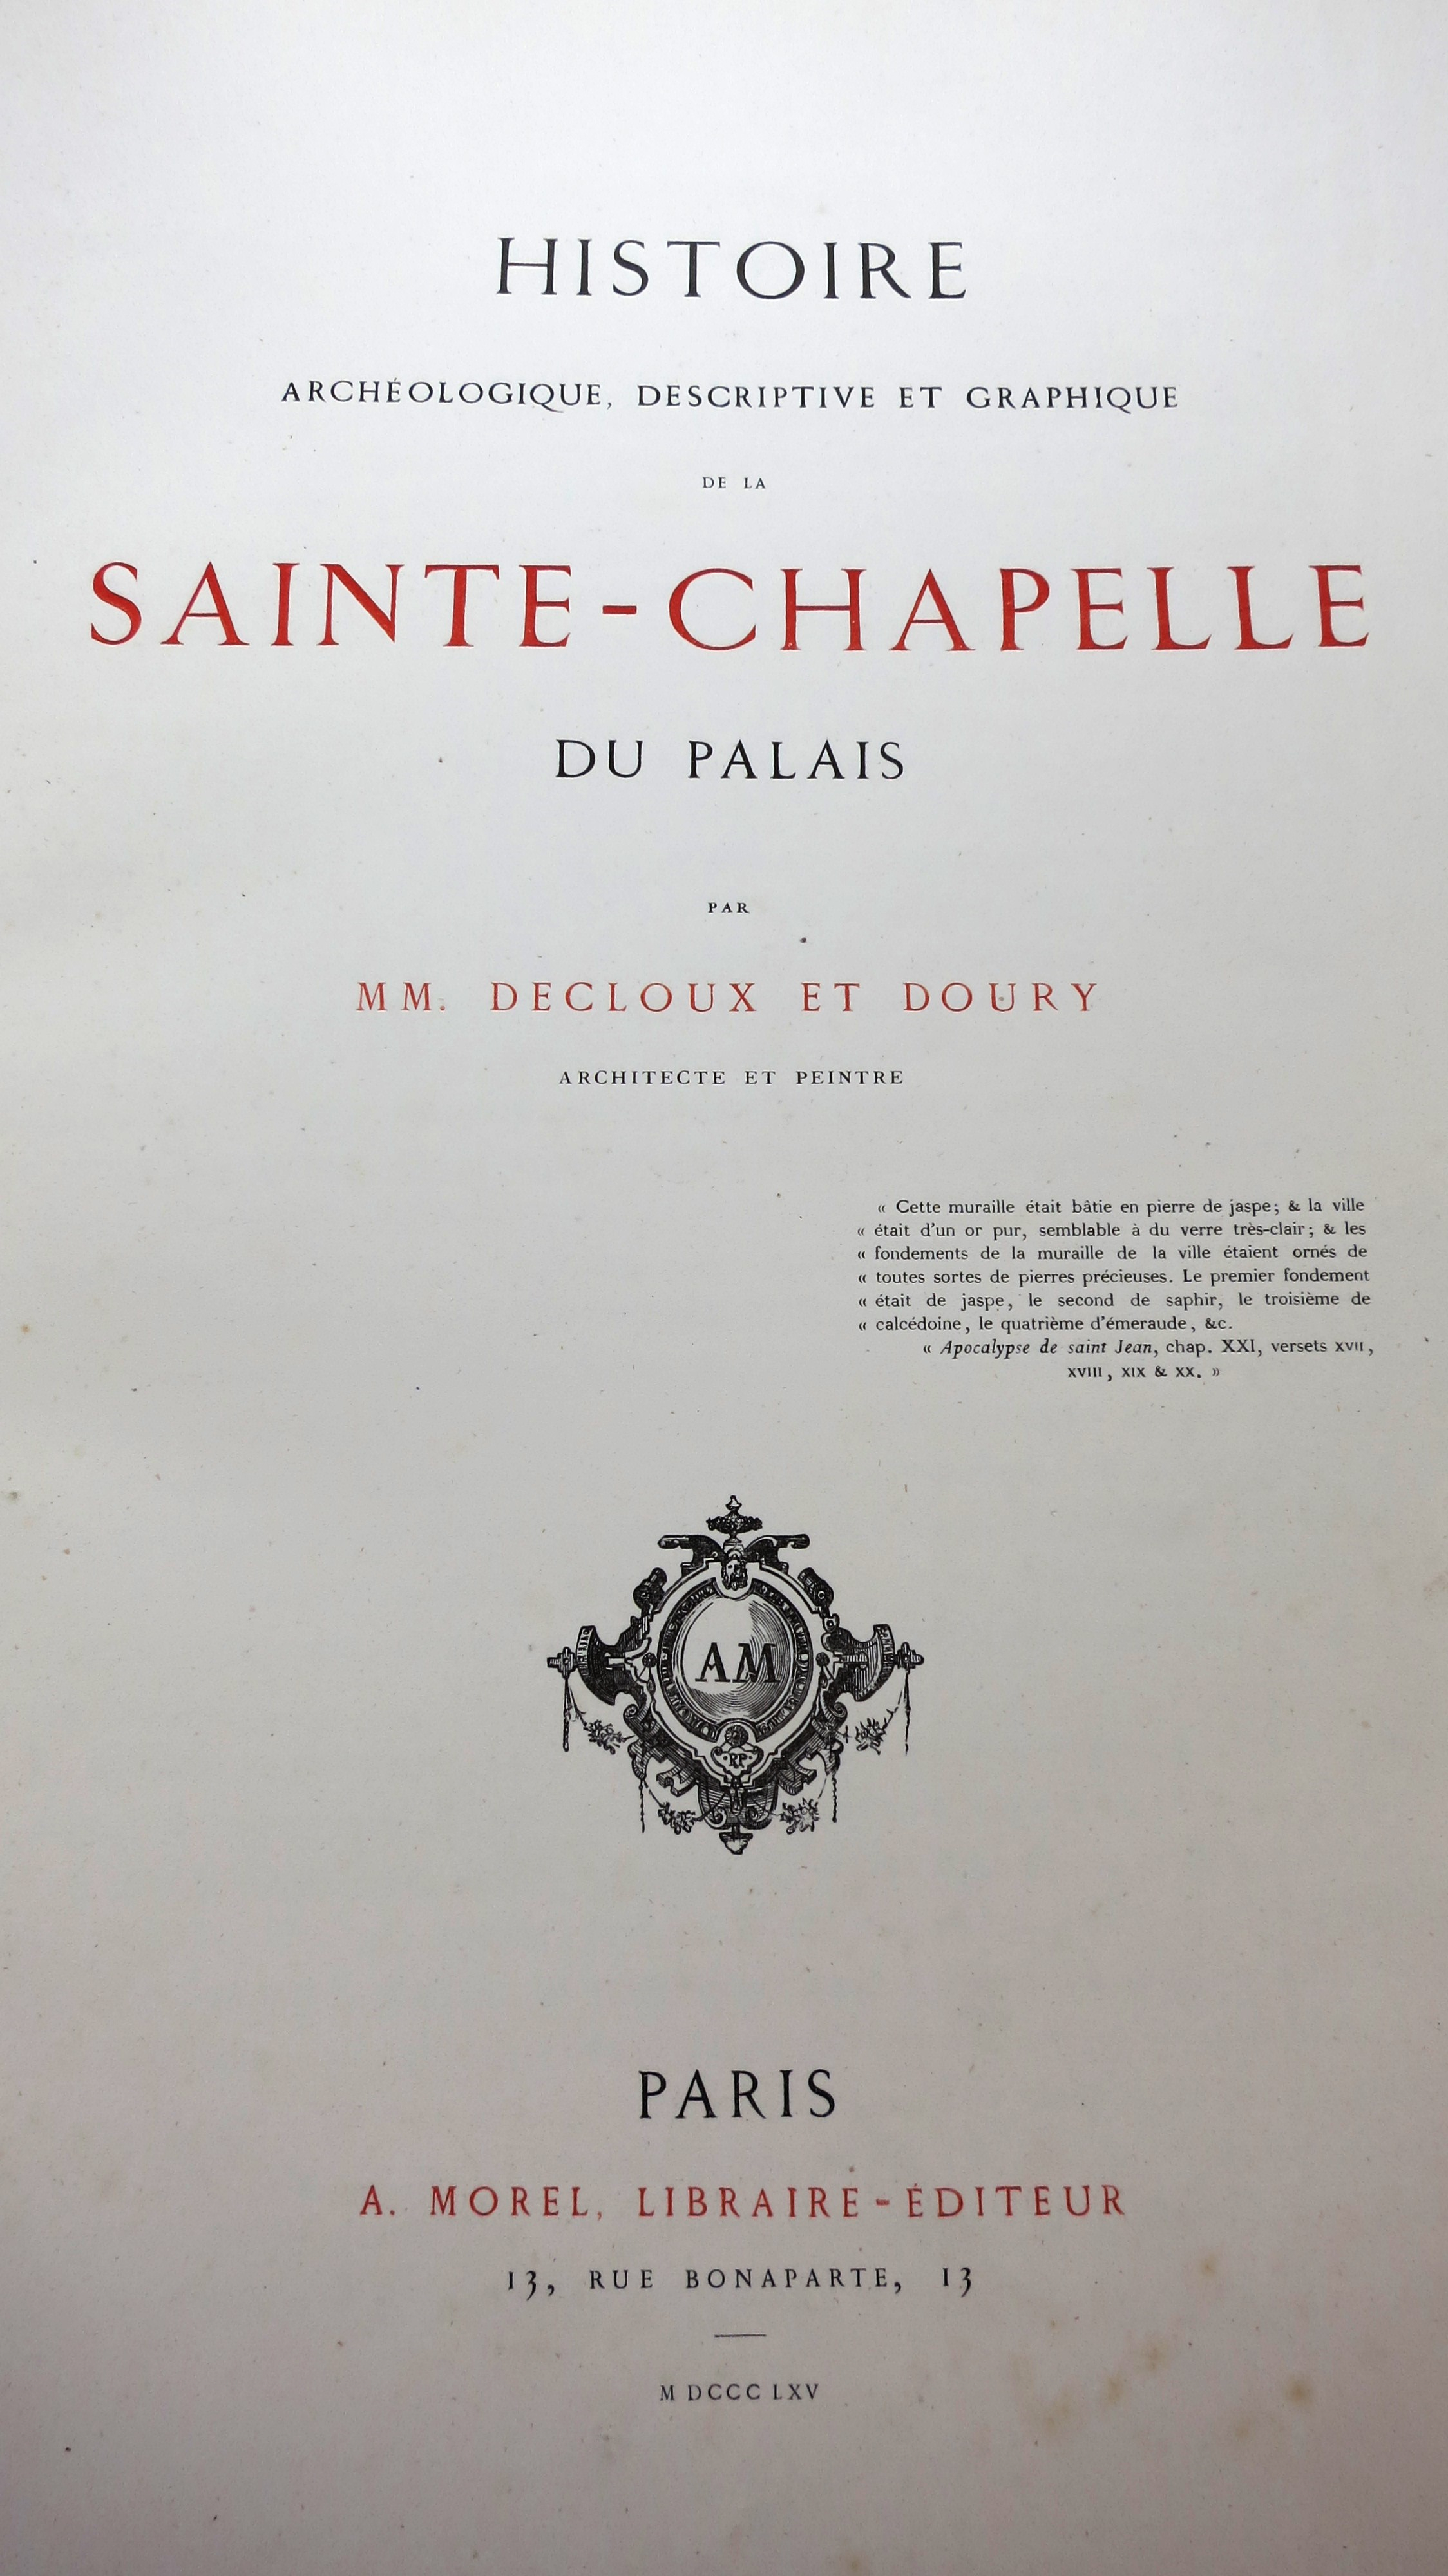 Histoire archéologique descriptive et graphique de la Sainte Chapelle 1865